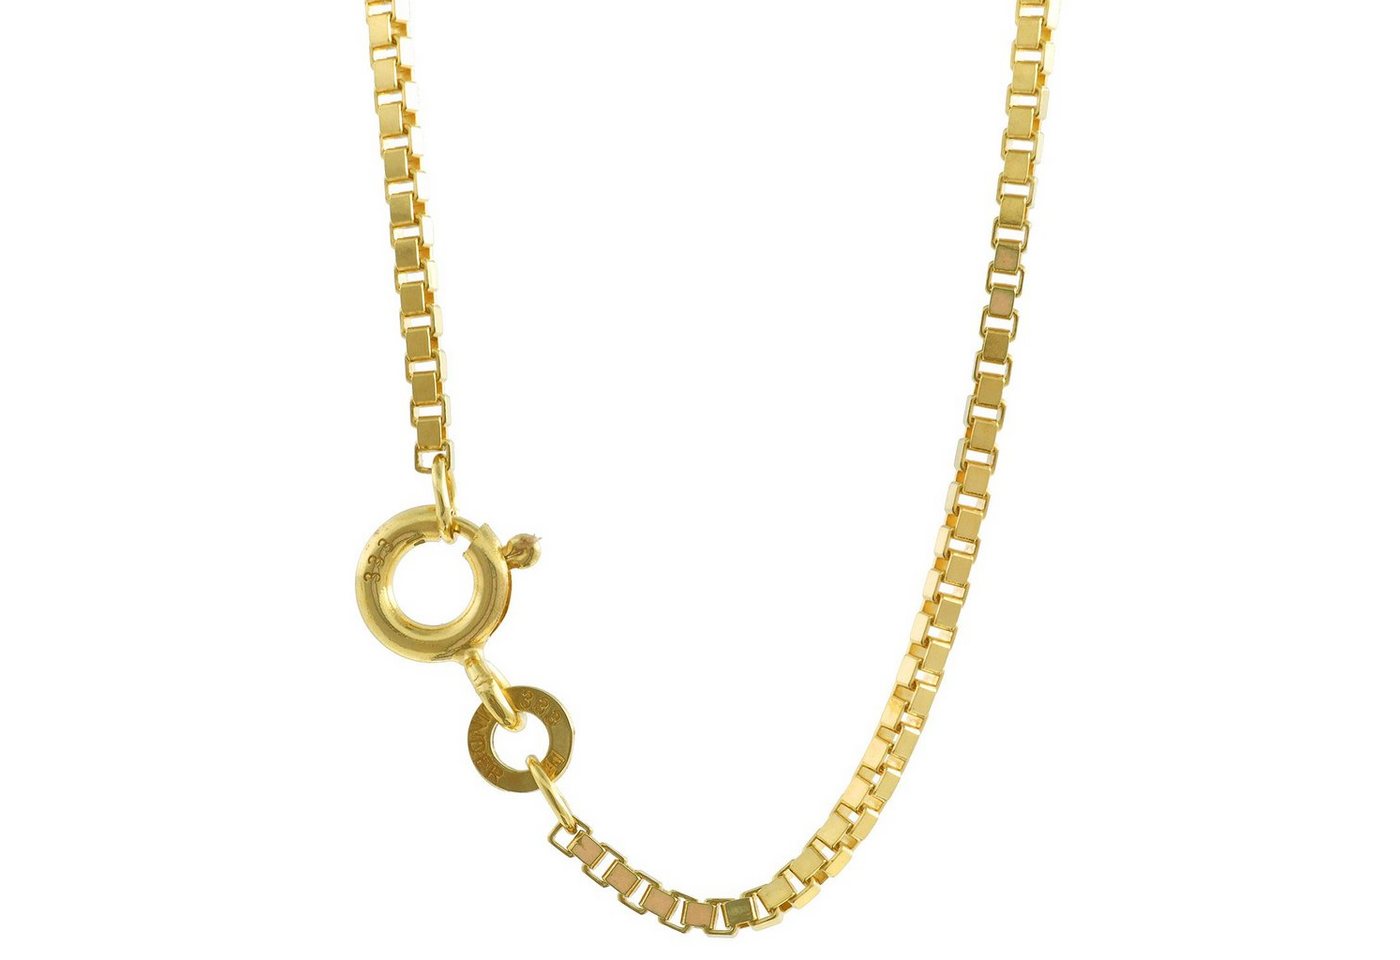 HOPLO Goldkette Goldkette Venezianerkette Länge 45cm - Breite 1,4mm - 333-8 Karat Gold, Made in Germany von HOPLO